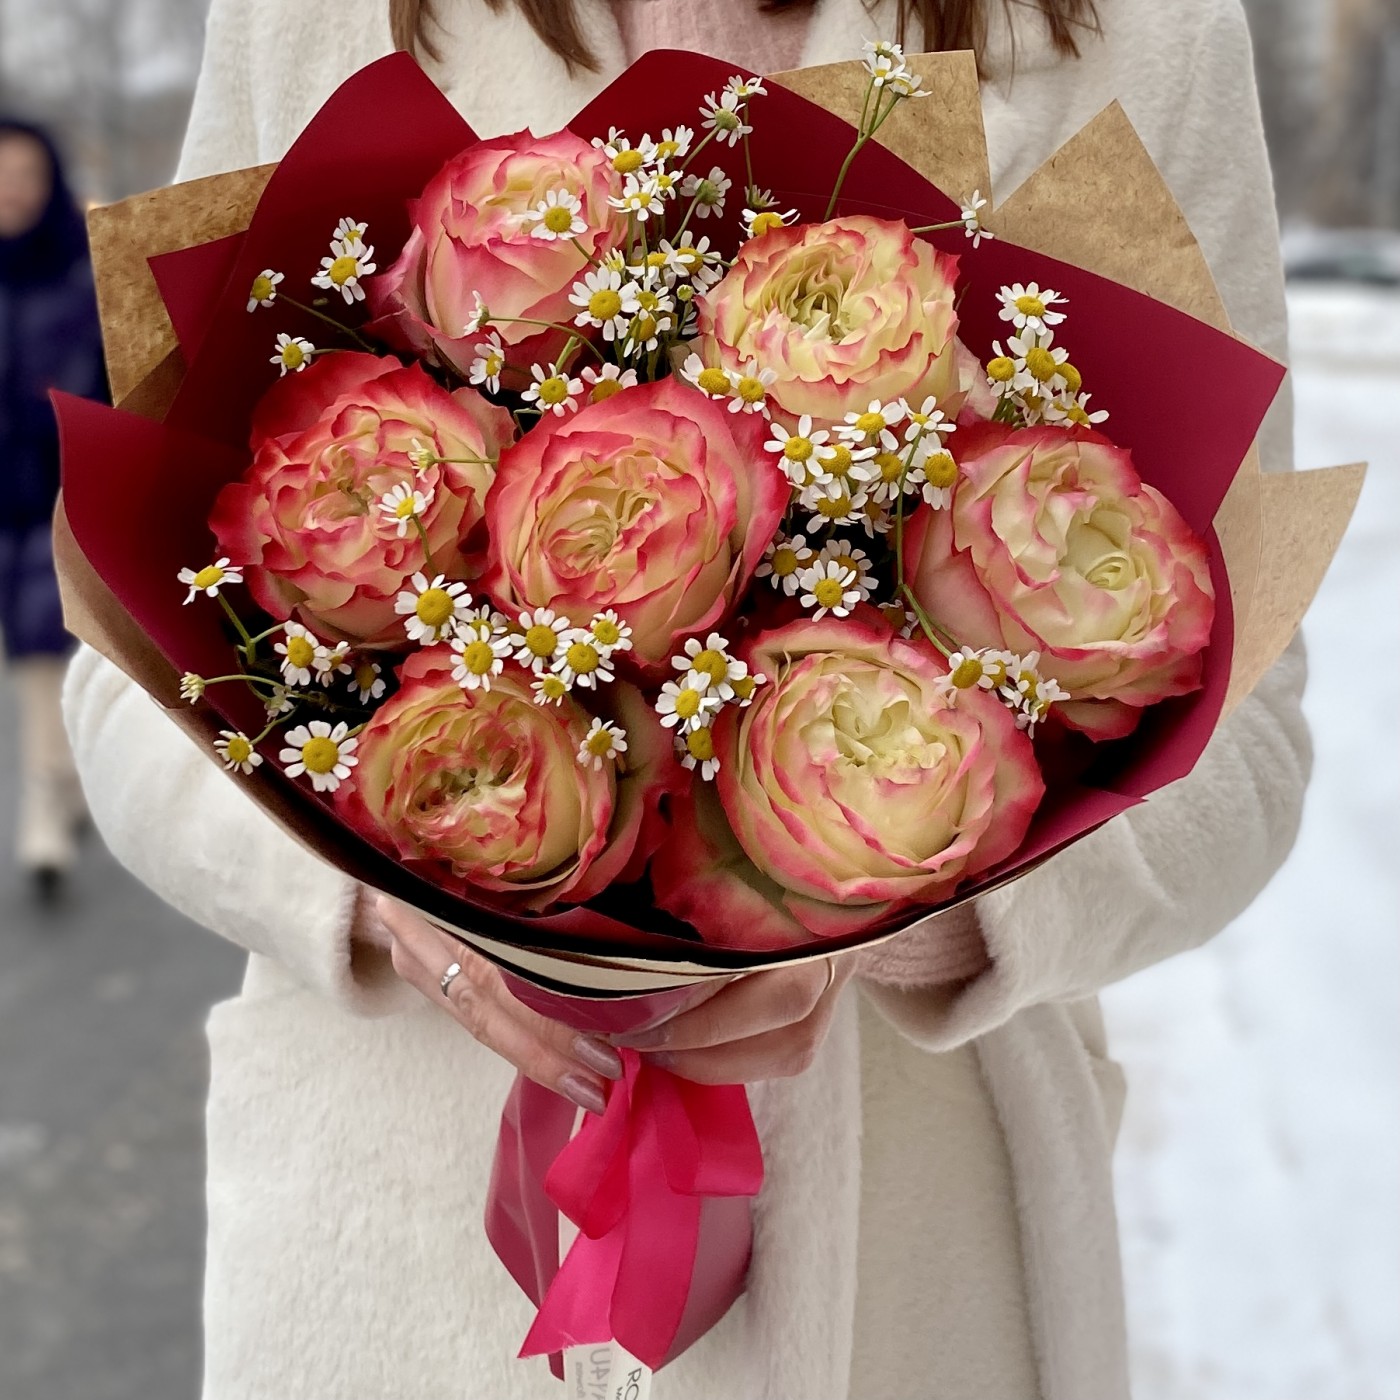 Самые красивые розы шикарные белые и фиолетовые розы нежные розы премиум класса редкие цветы